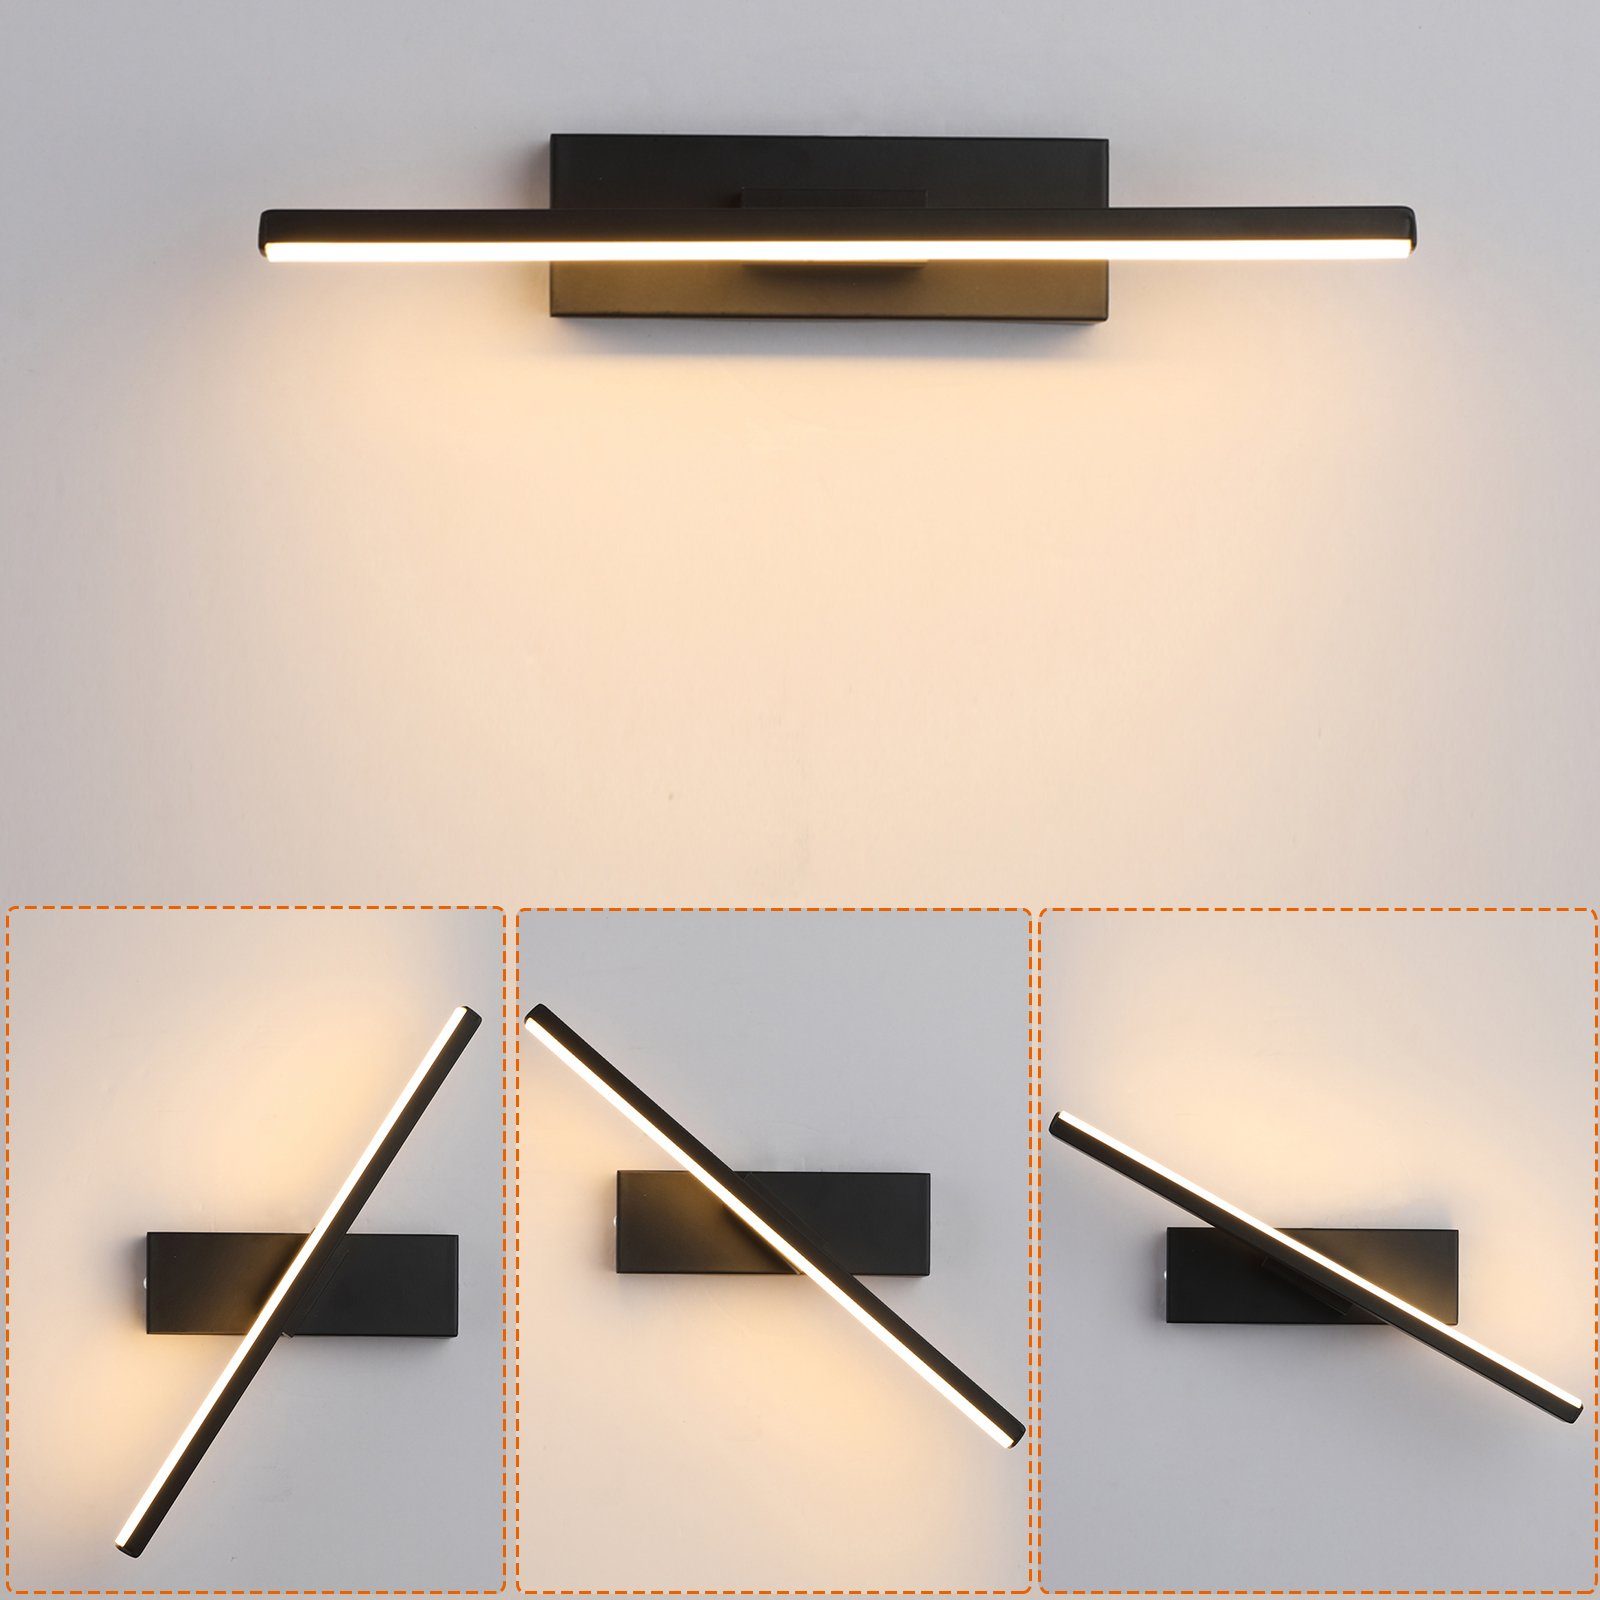 MUPOO LED Wandleuchte Innen,Modern Wandlampe 6-10 W, Wandbeleuchtung 600-1000lm